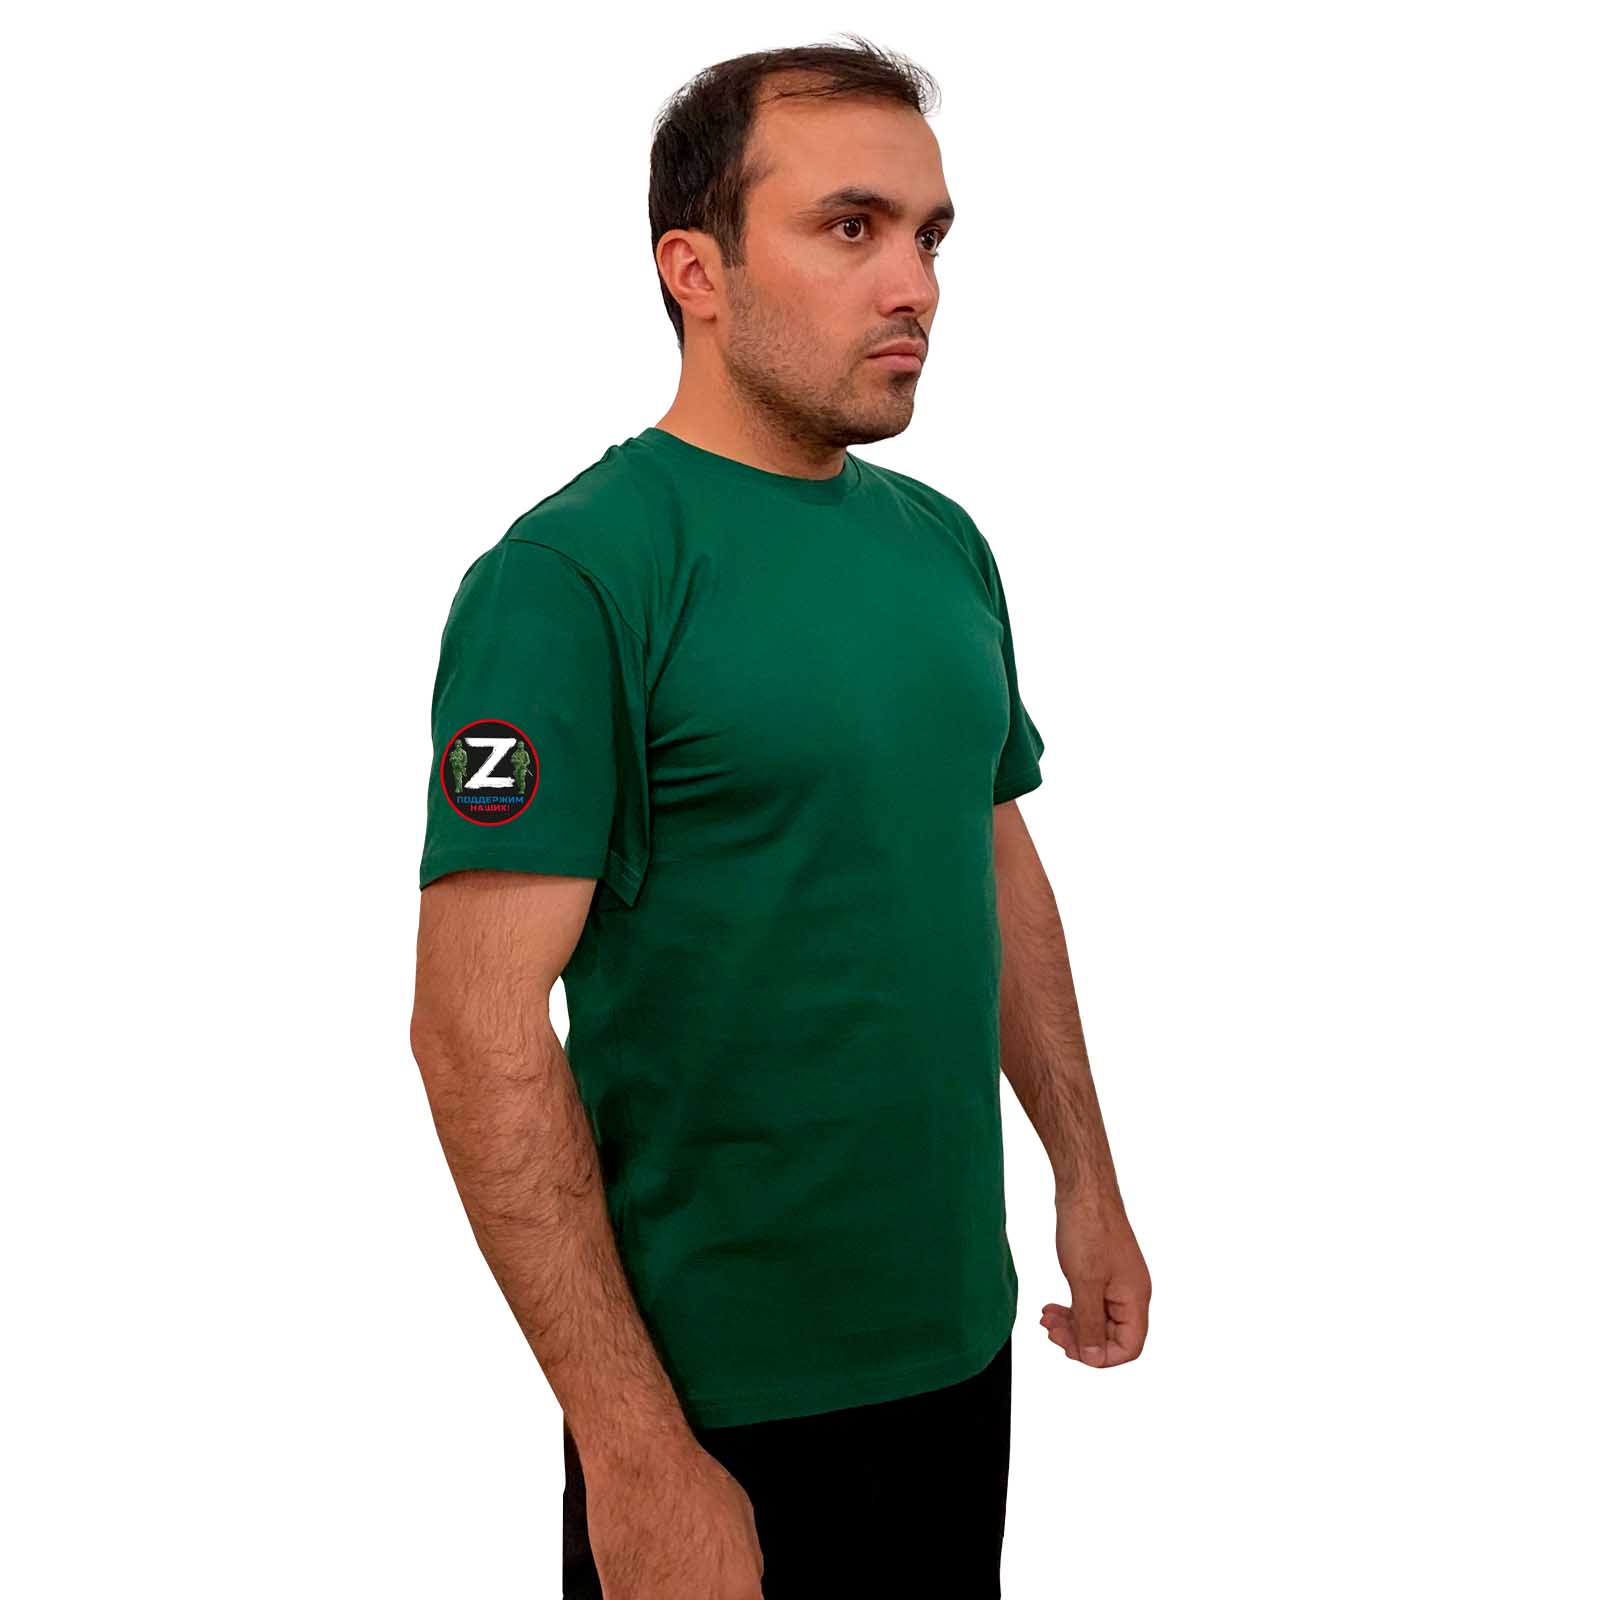 Зелёная футболка с трансфером Z на рукаве